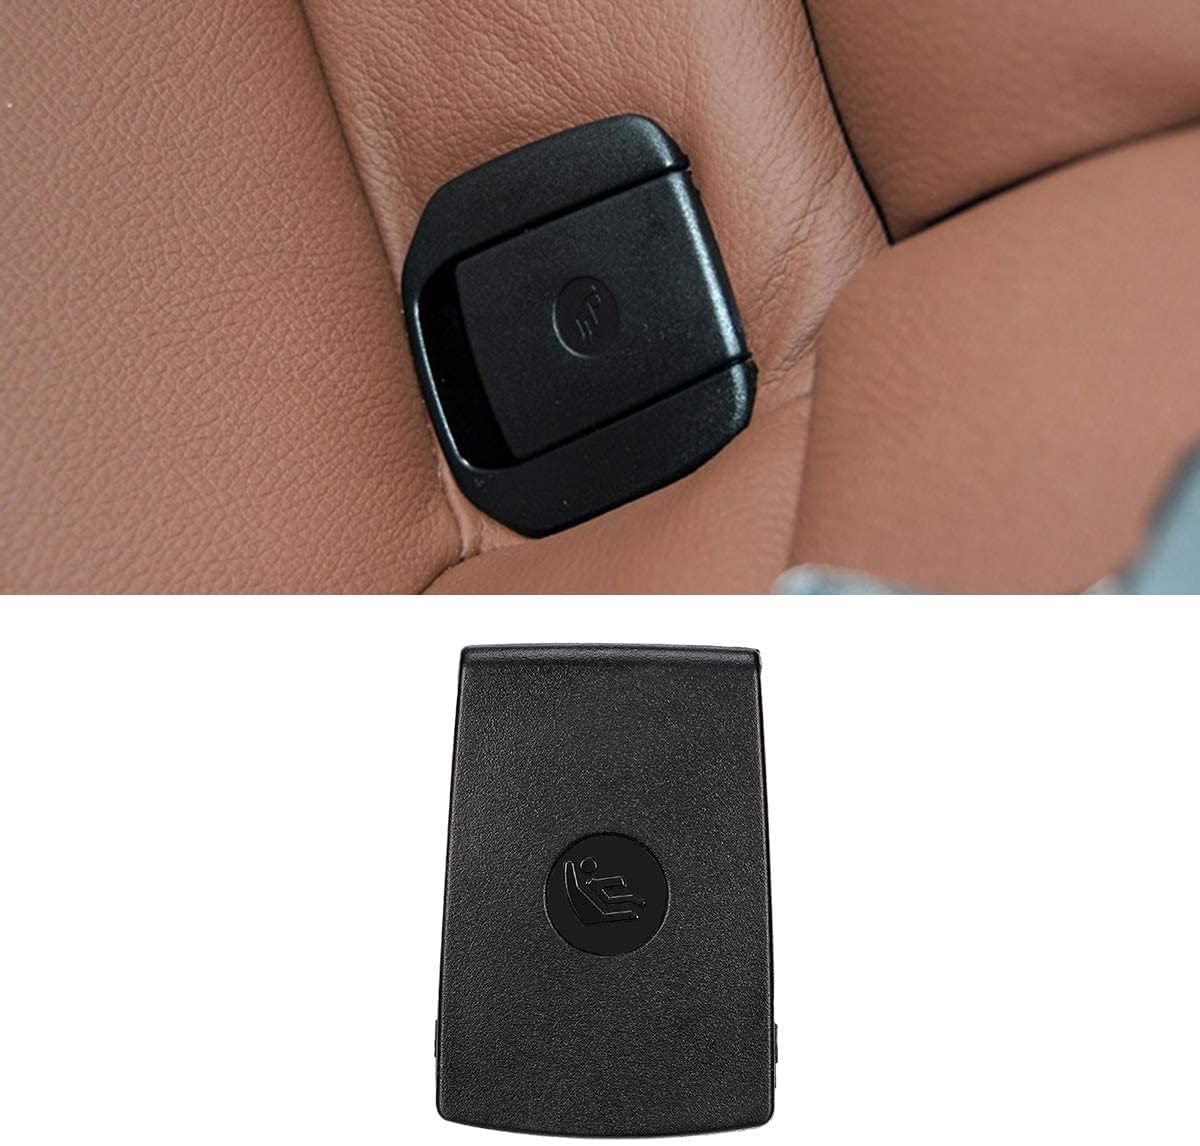 HommyFine ISOFix Rear Child Seat Cover Compatible with BMW 1 Series E81 E82 F20 F21 /2 Series F22 F87 F23 / 3 Series E90 E91 F30 F31 F34 F80/X1 E. 84 (S) Black)